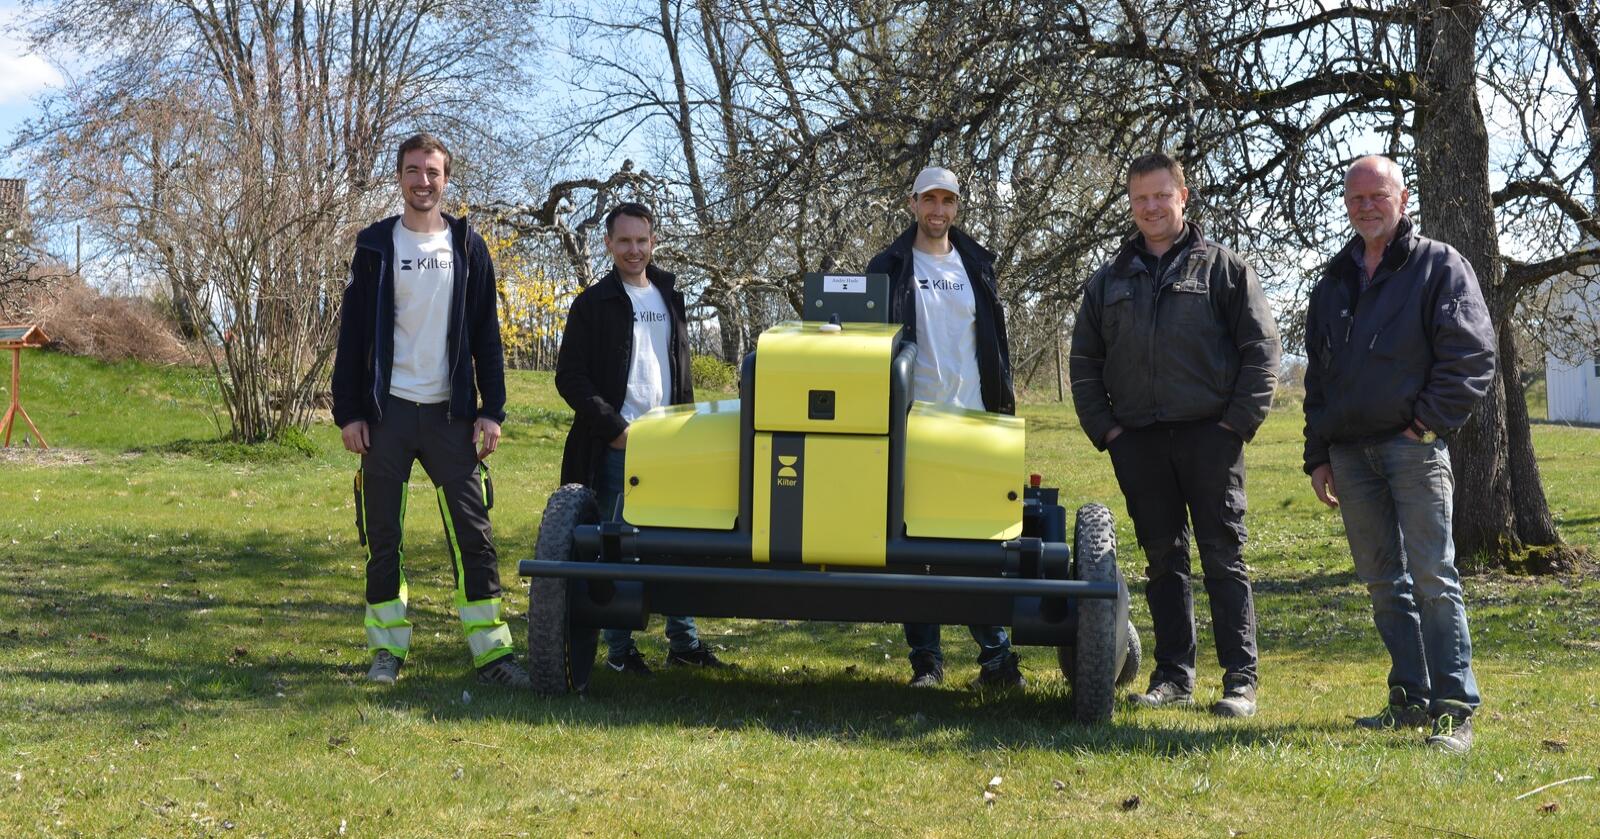 NY: Verdens første ugrasrobot, Kilter AX1, er levert. Fra venstre: Mats Langfeldt, Anders Brevik, Vegard Line (alle fra Kilter) og kjøperne André og Roy Hasle. Foto: Leica Geosystems